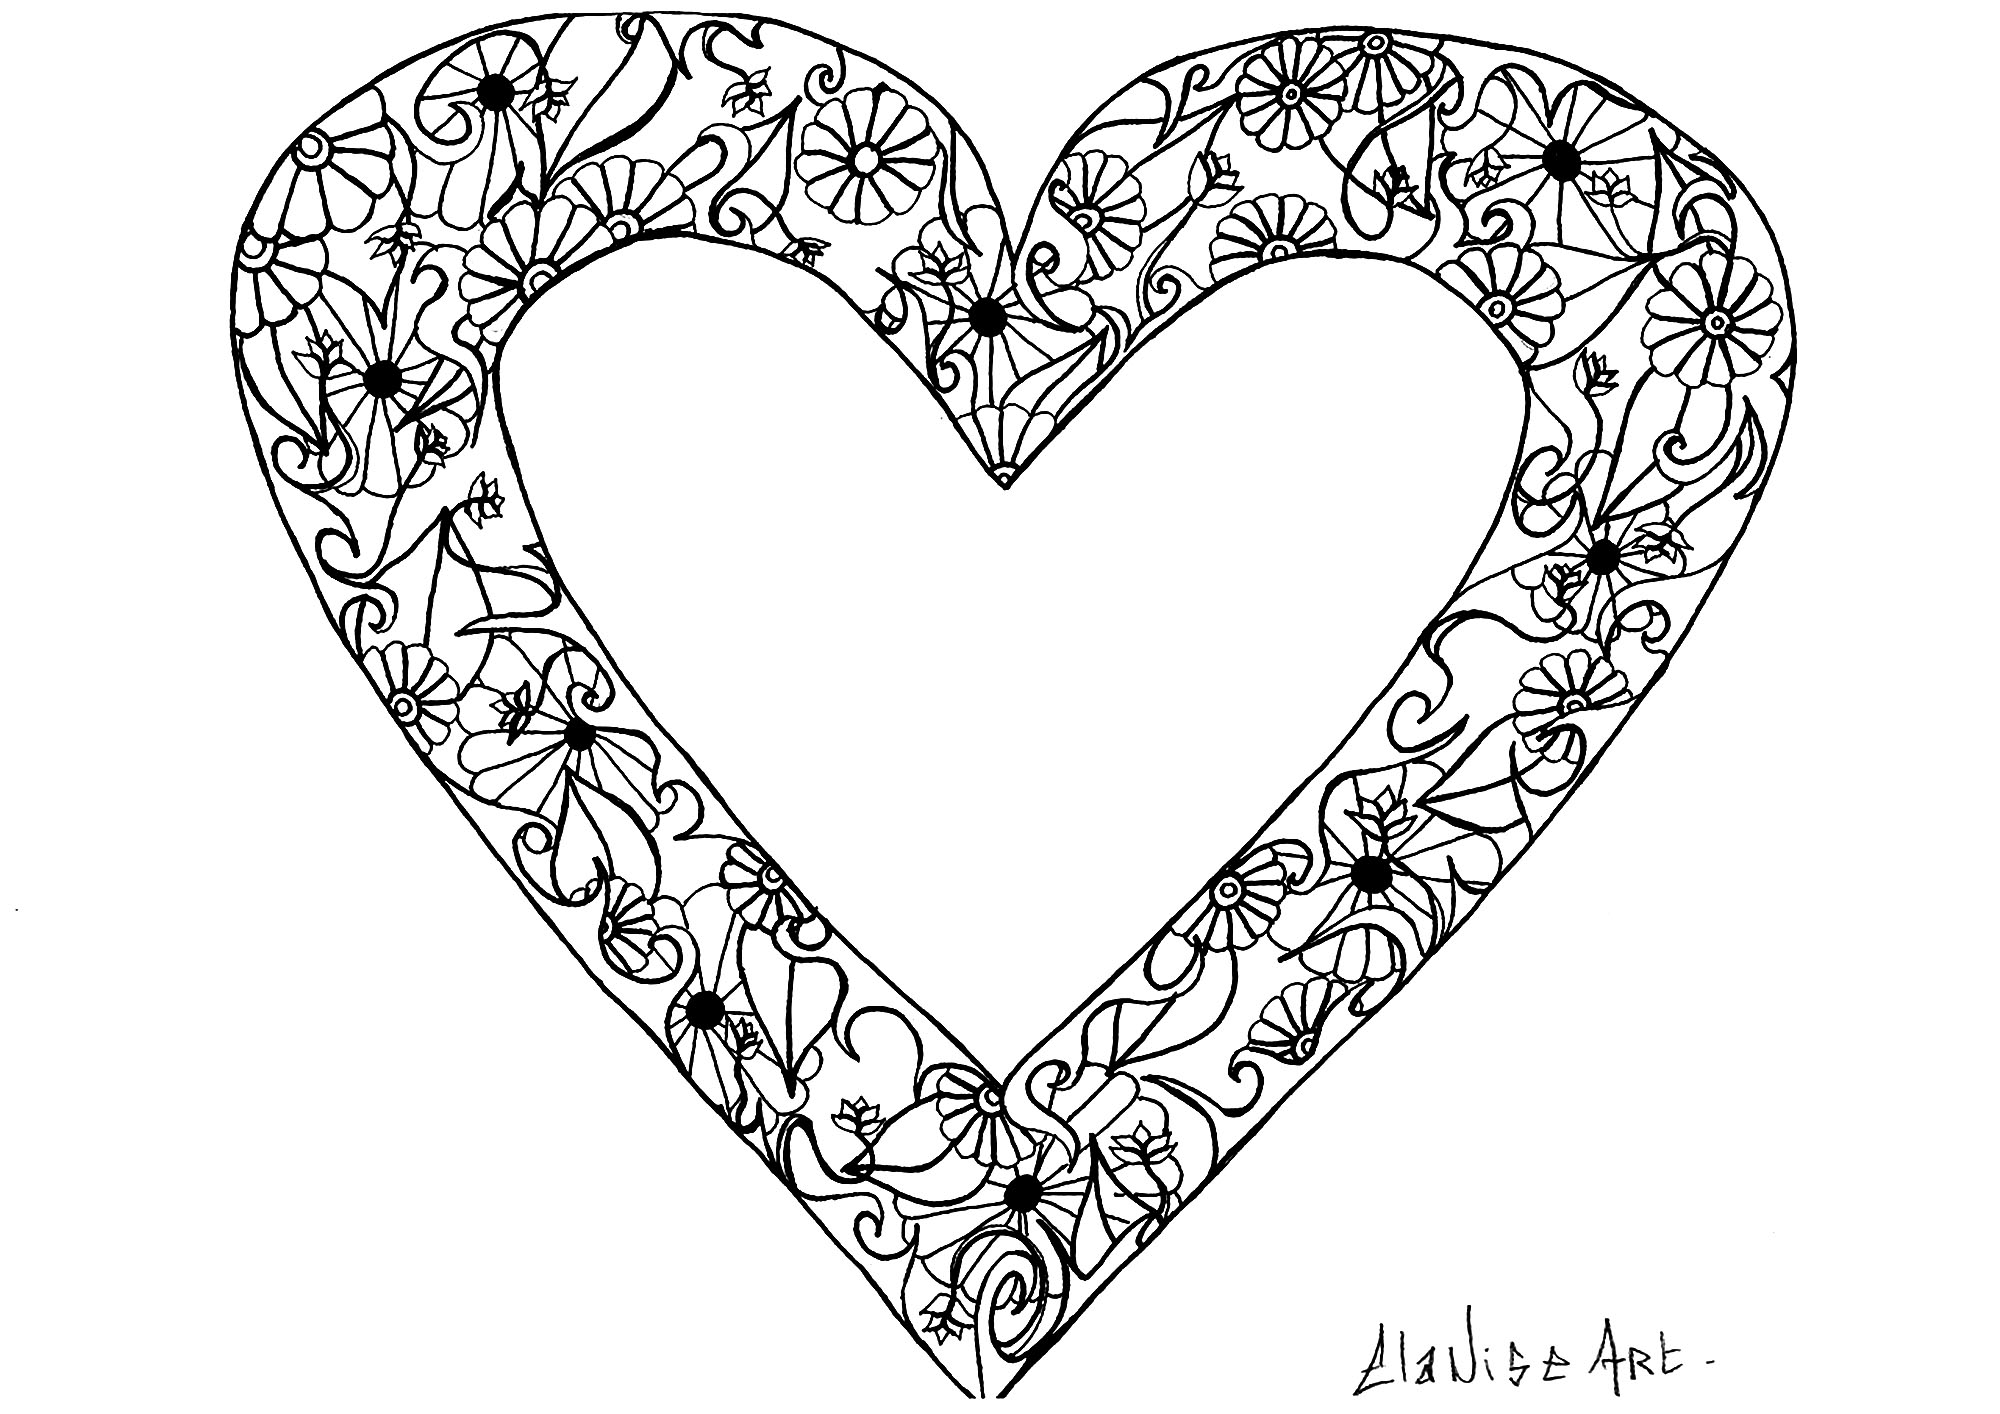 Fresco dibujo con un corazón que contiene flores y hojas sencillas